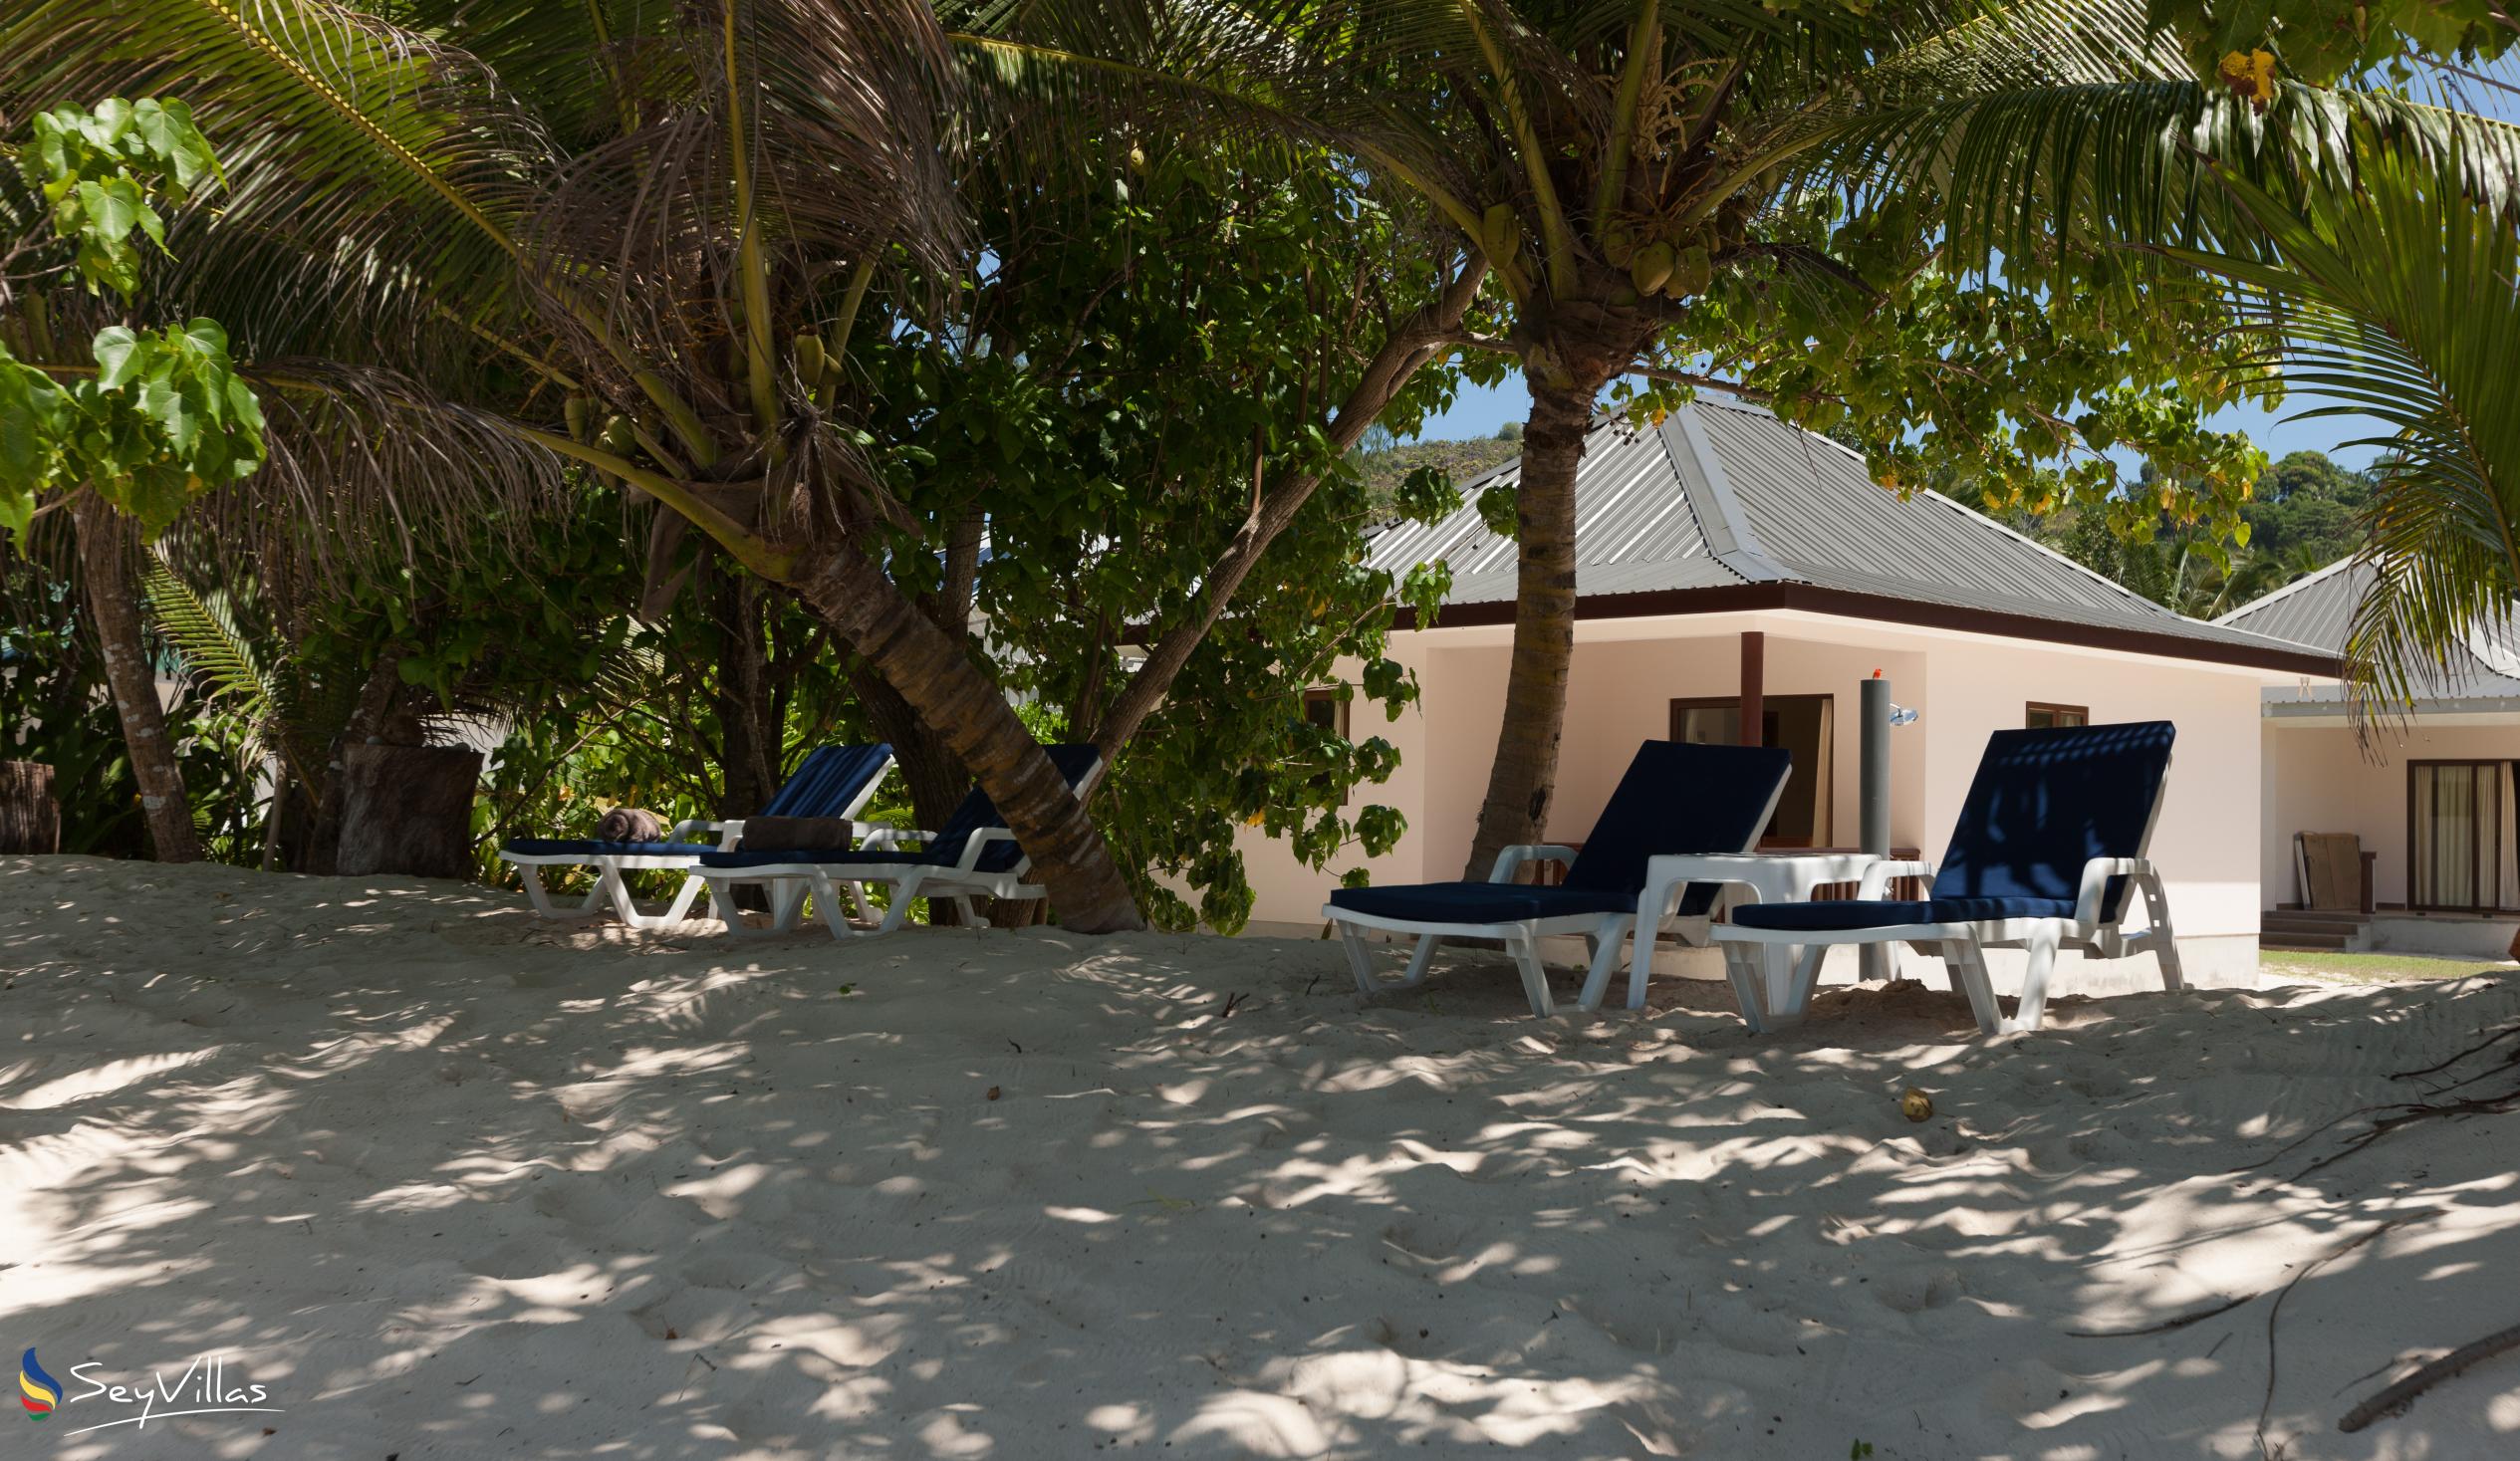 Foto 10: Villa Belle Plage - Aussenbereich - Praslin (Seychellen)